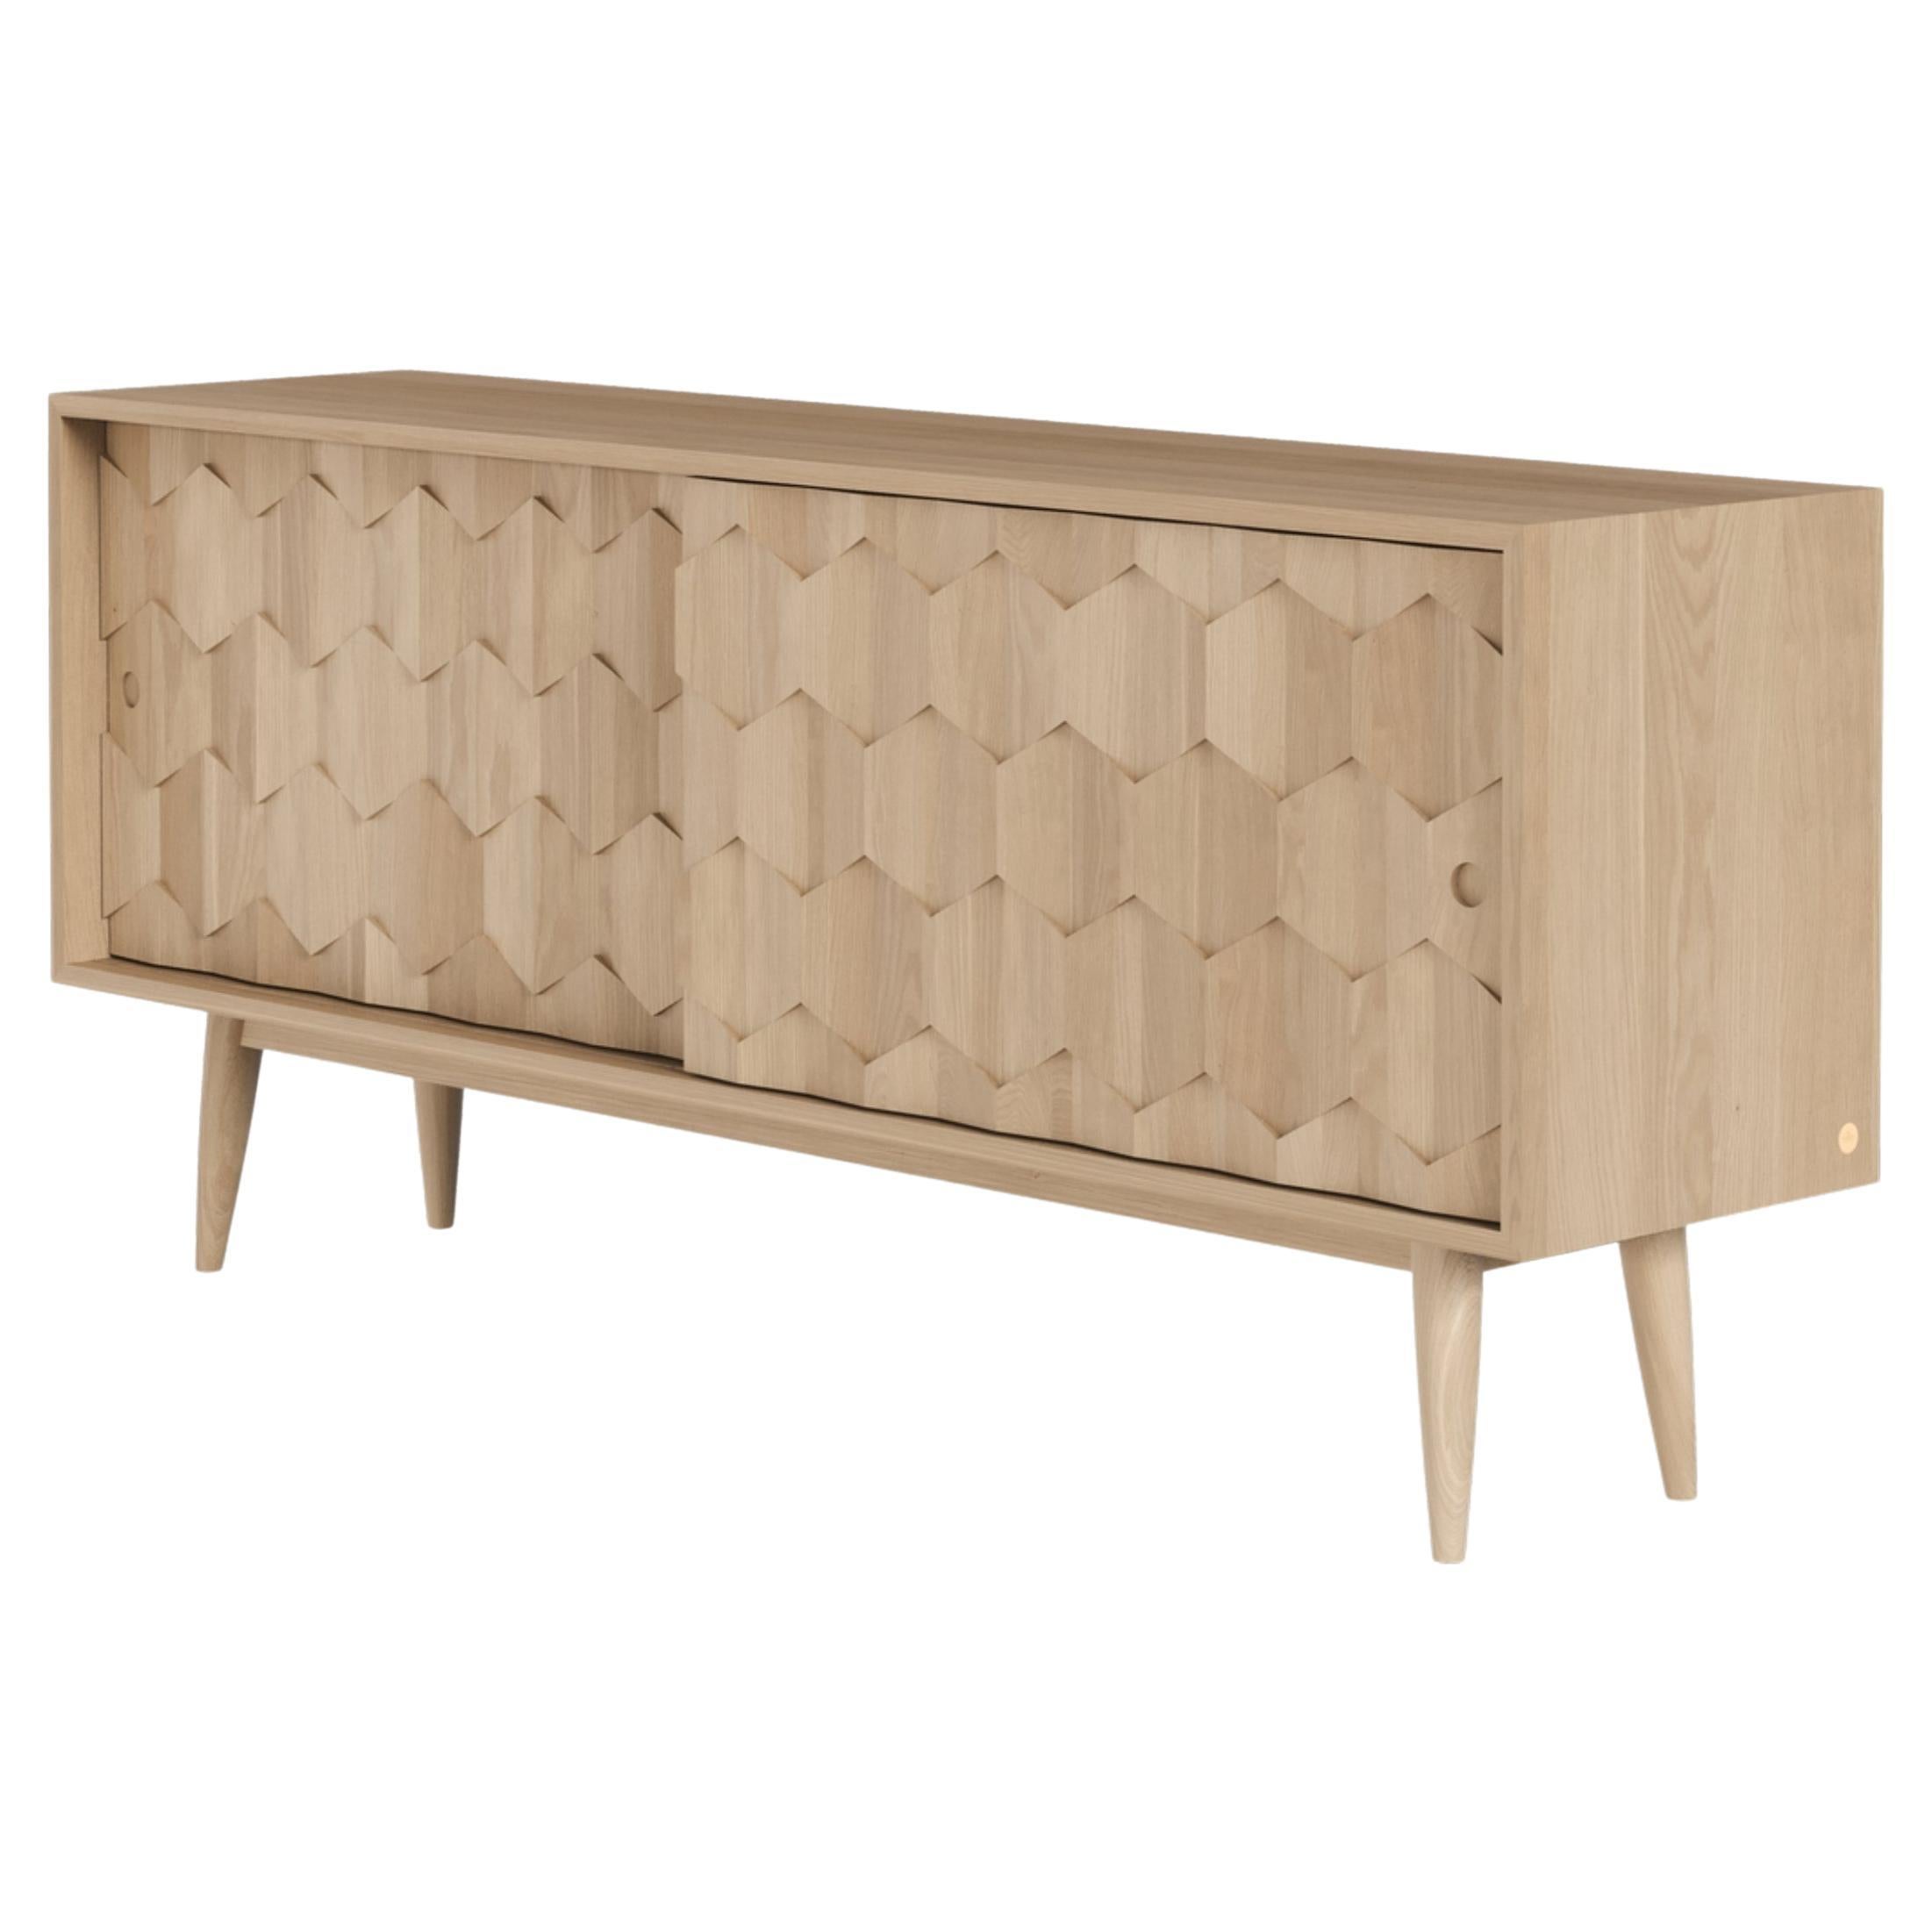 Oak Sideboard Cabinet